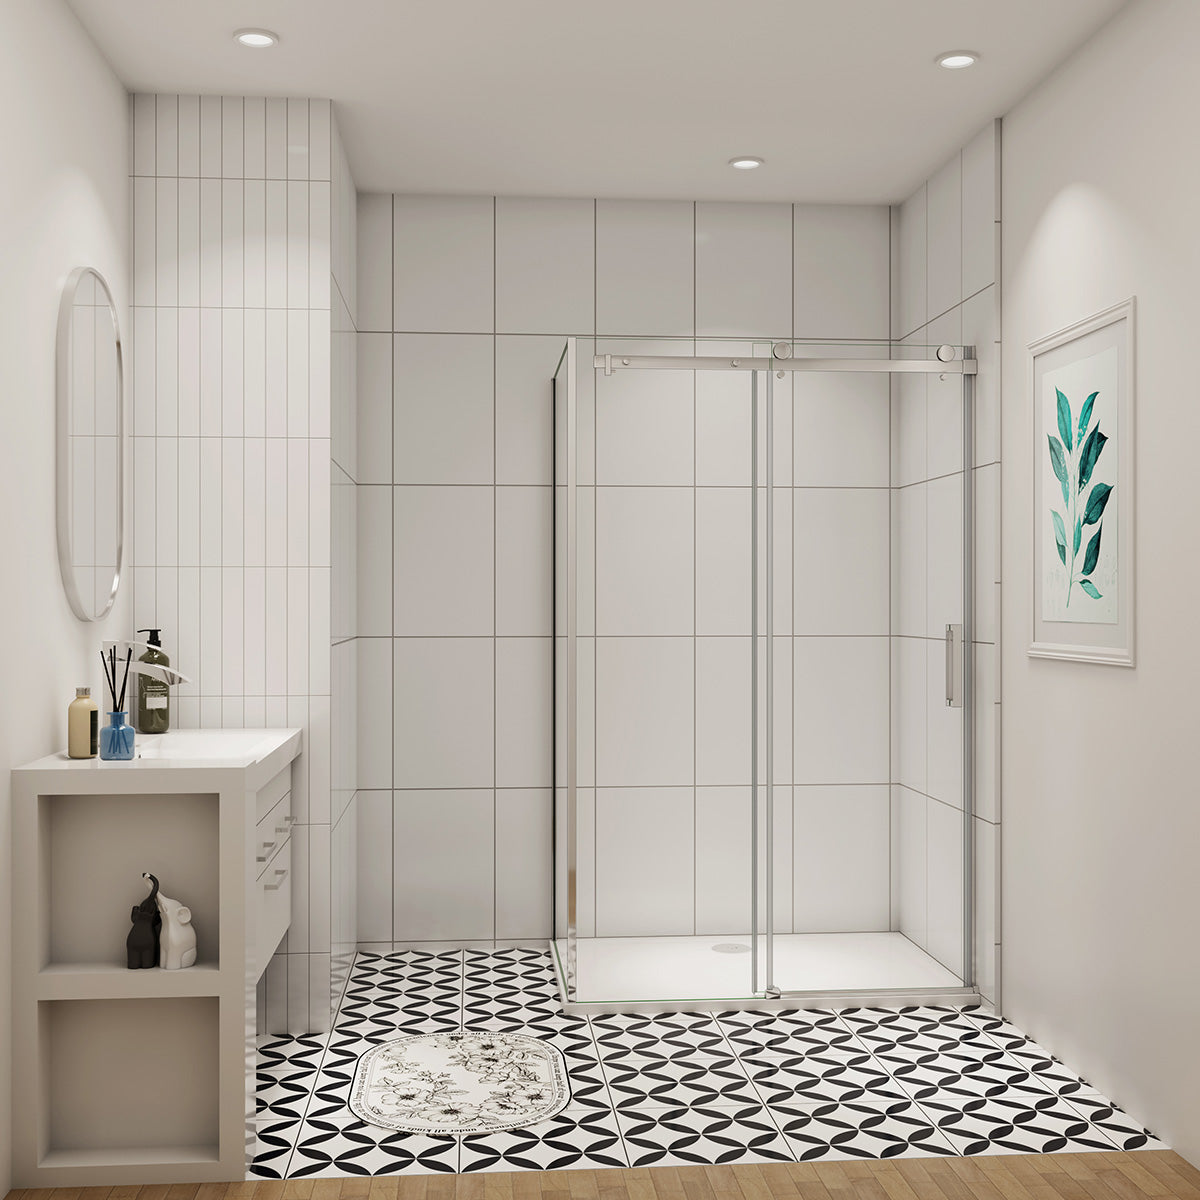 Duschtür+Seitenwand Dusche Duschabtrennung Duschkabine 120x80 cm Glasstärke 8mm Schiebetür